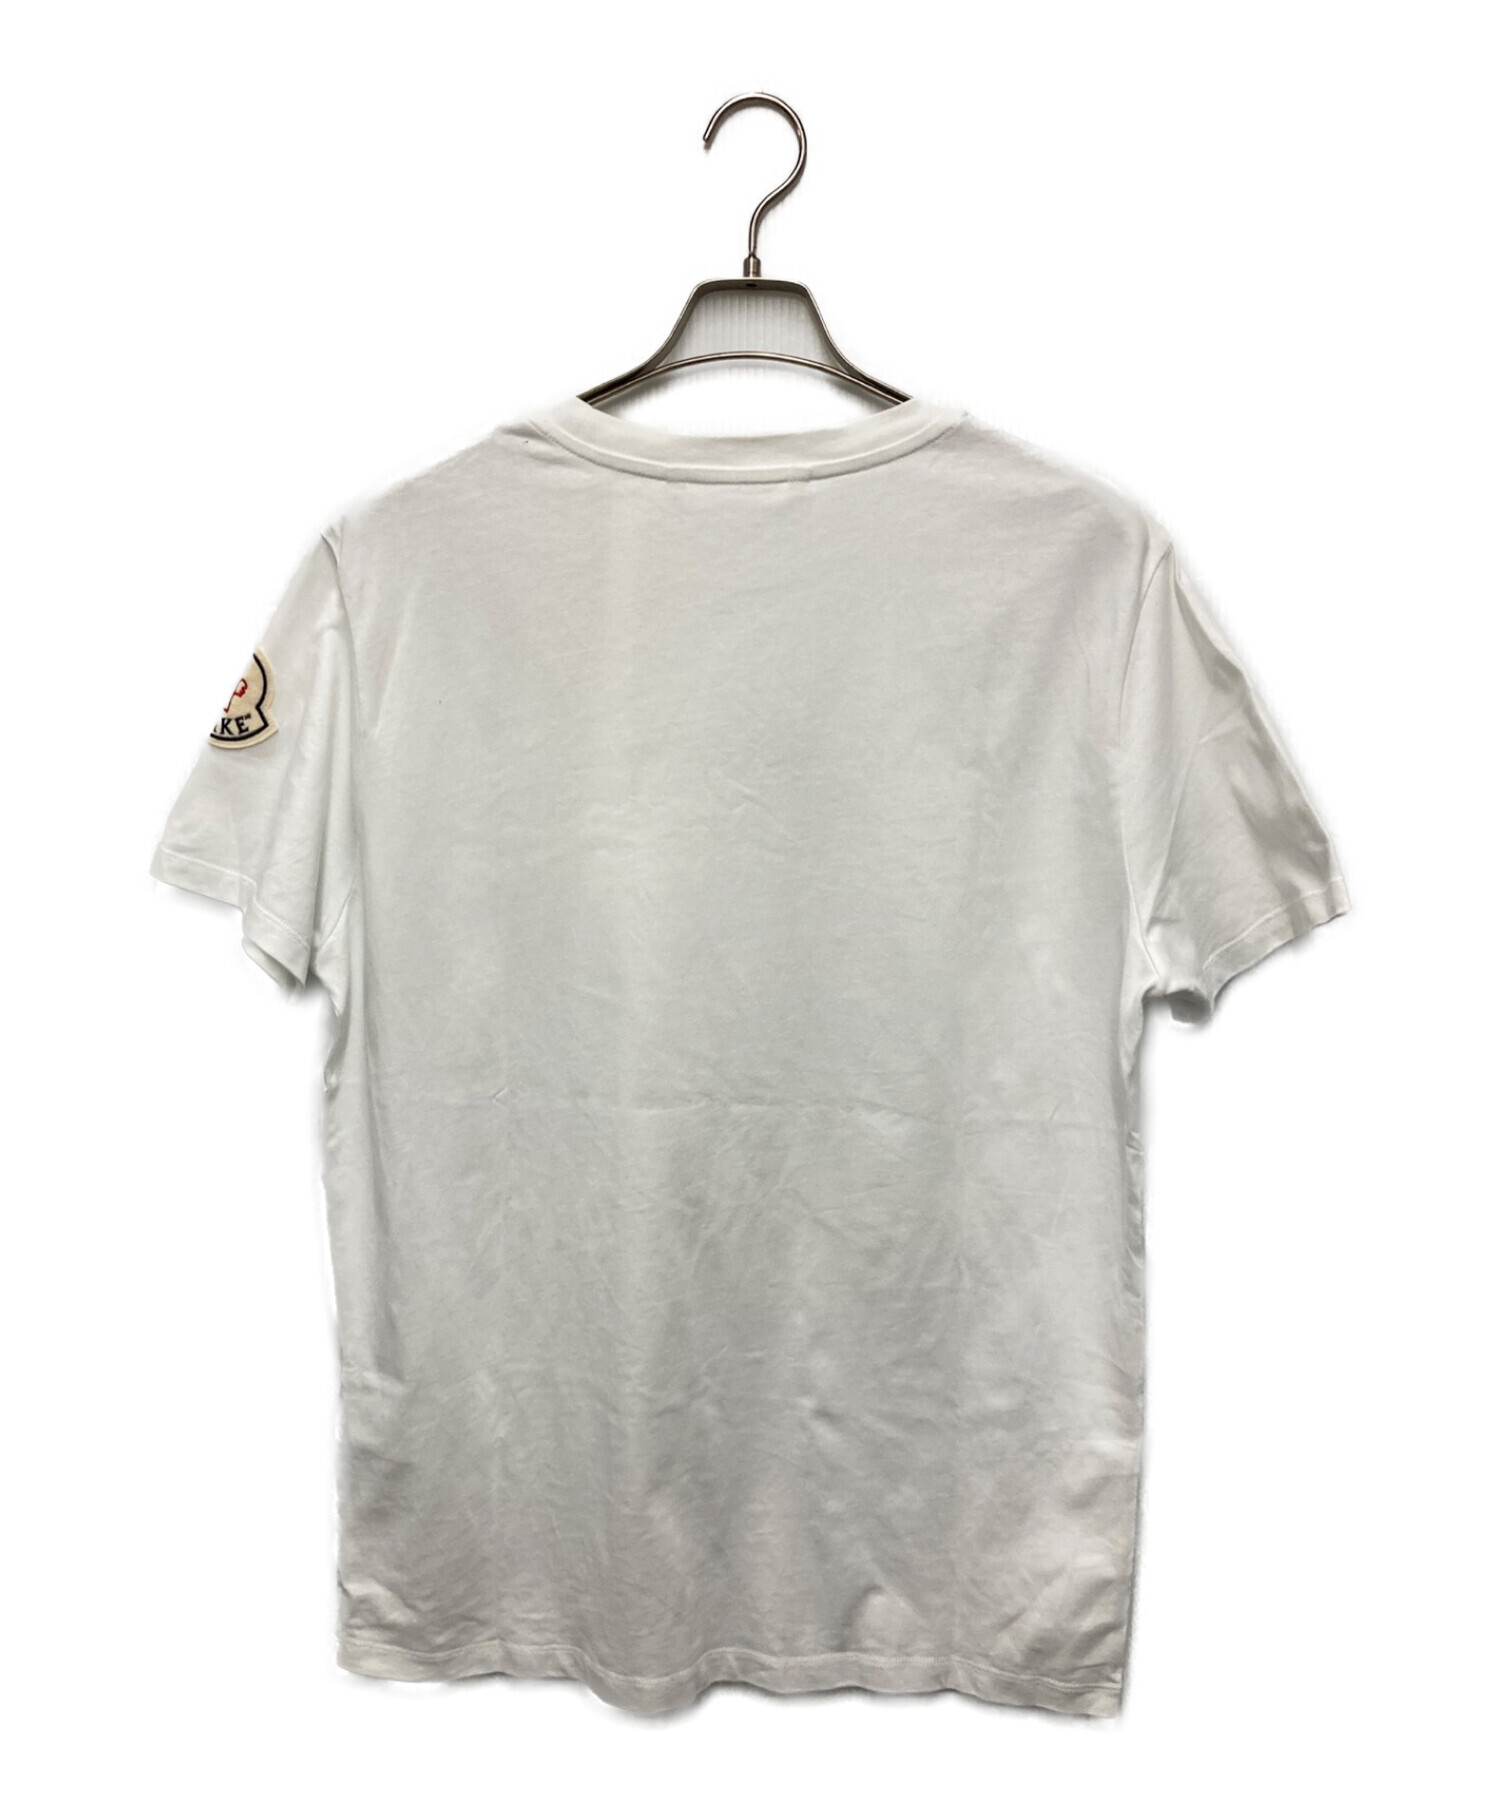 MONCLER (モンクレール) AWAKE (アウェイク) コラボプリントTシャツ ホワイト サイズ:L